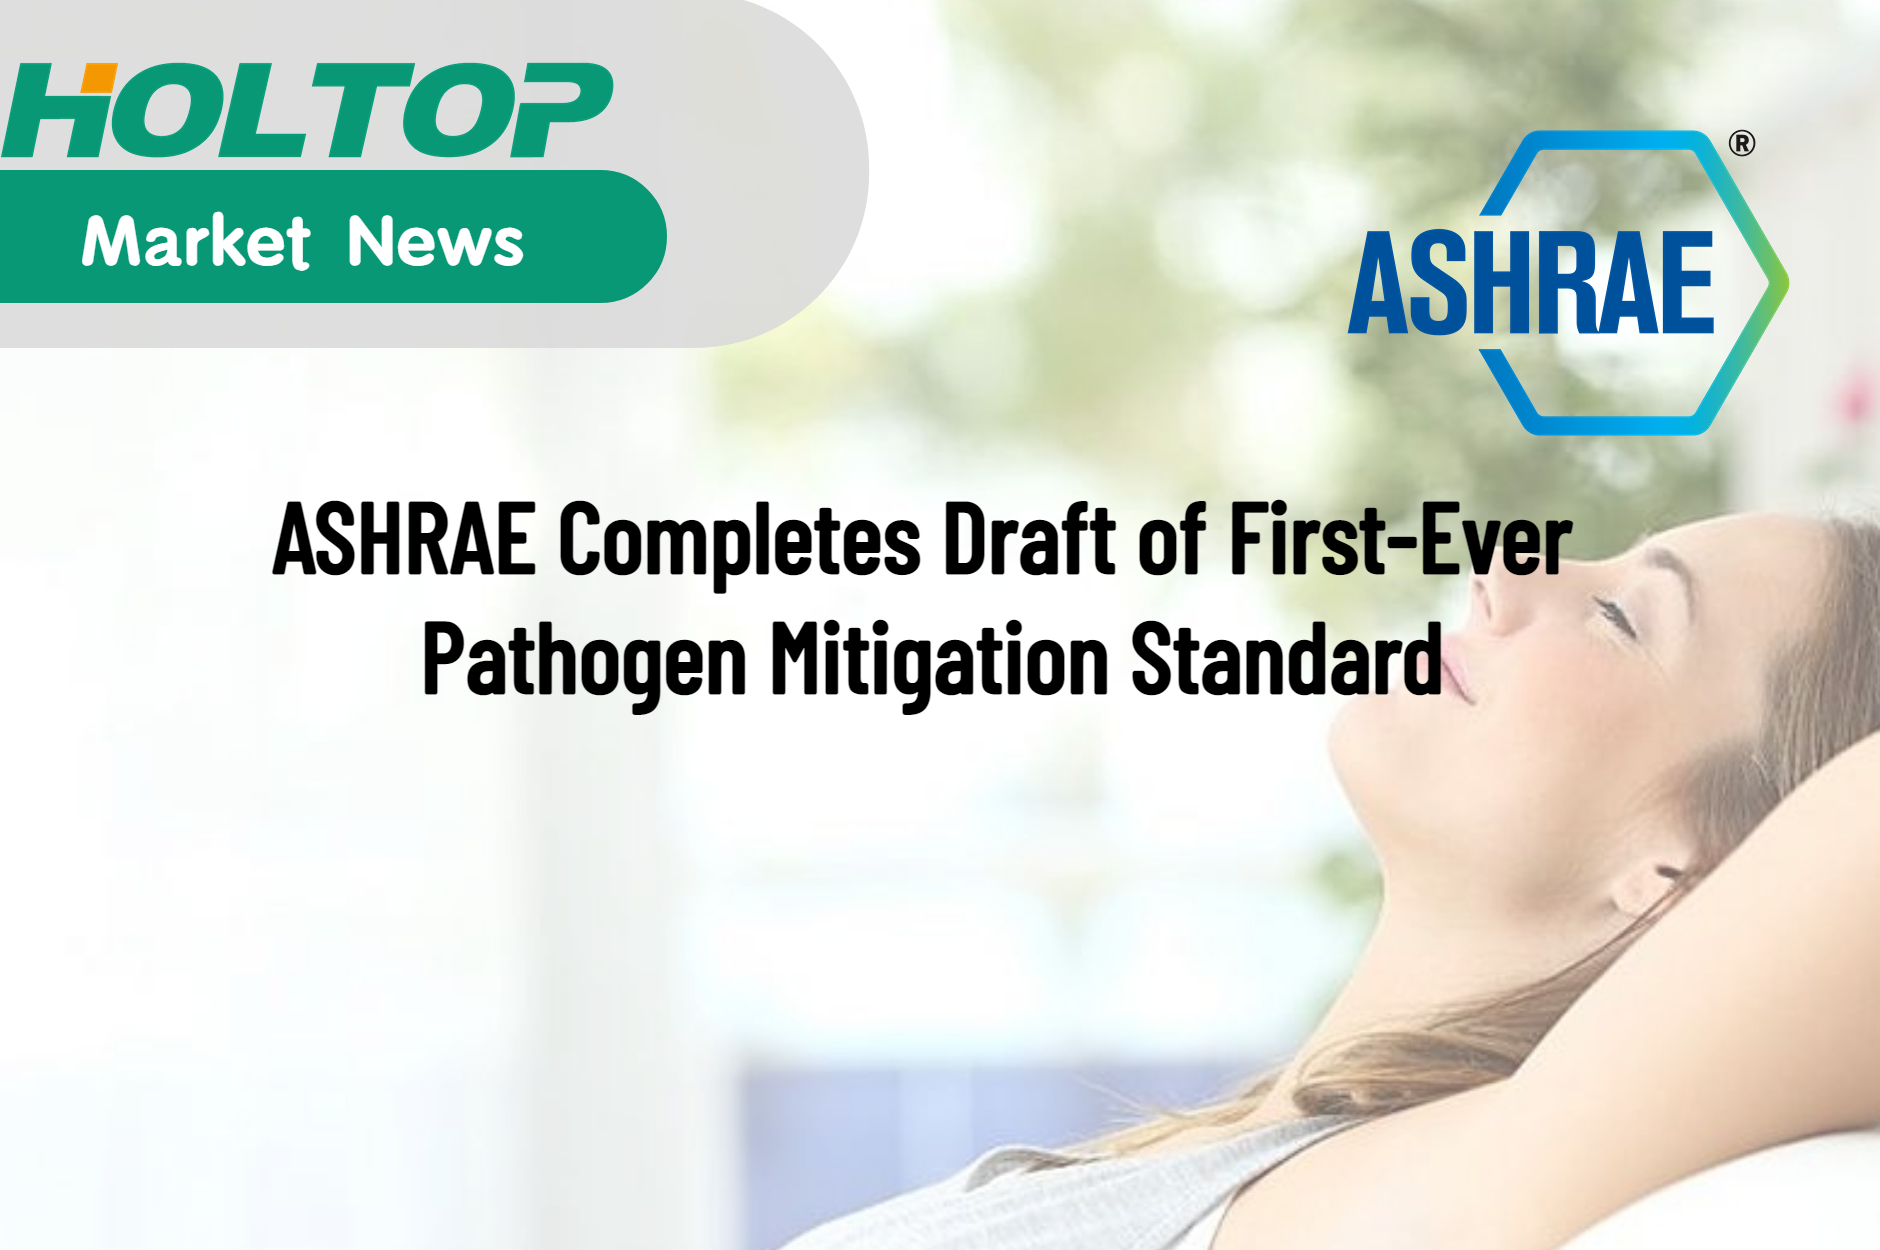 ASHRAE dokončuje návrh prvního standardu pro zmírnění patogenů